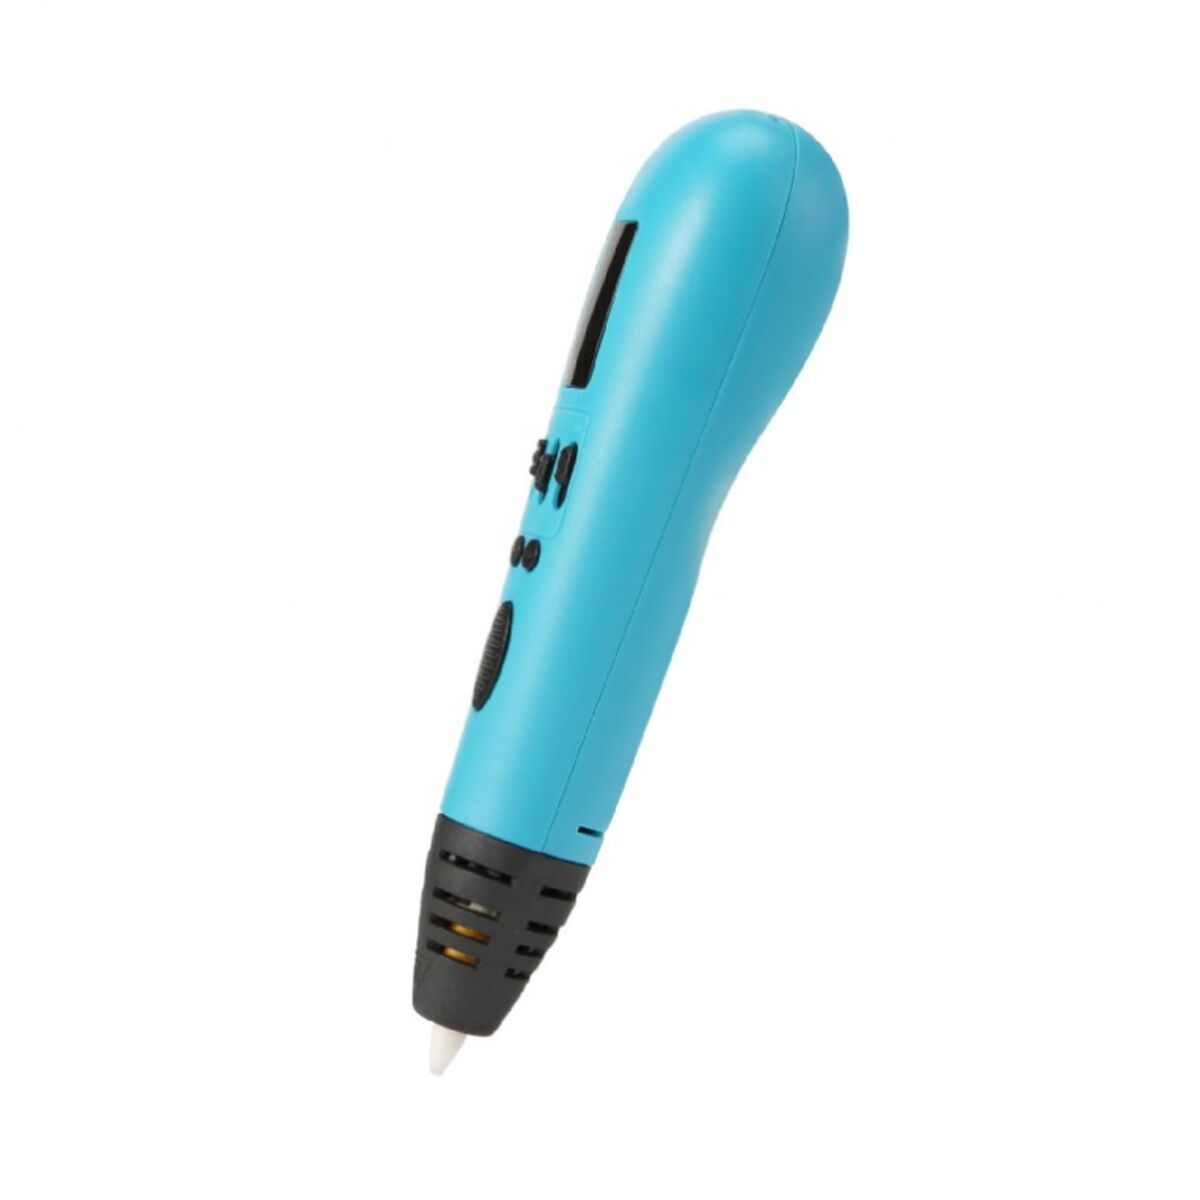 Ya se puede pintar en el aire: este bolígrafo 3D de Leroy Merlin